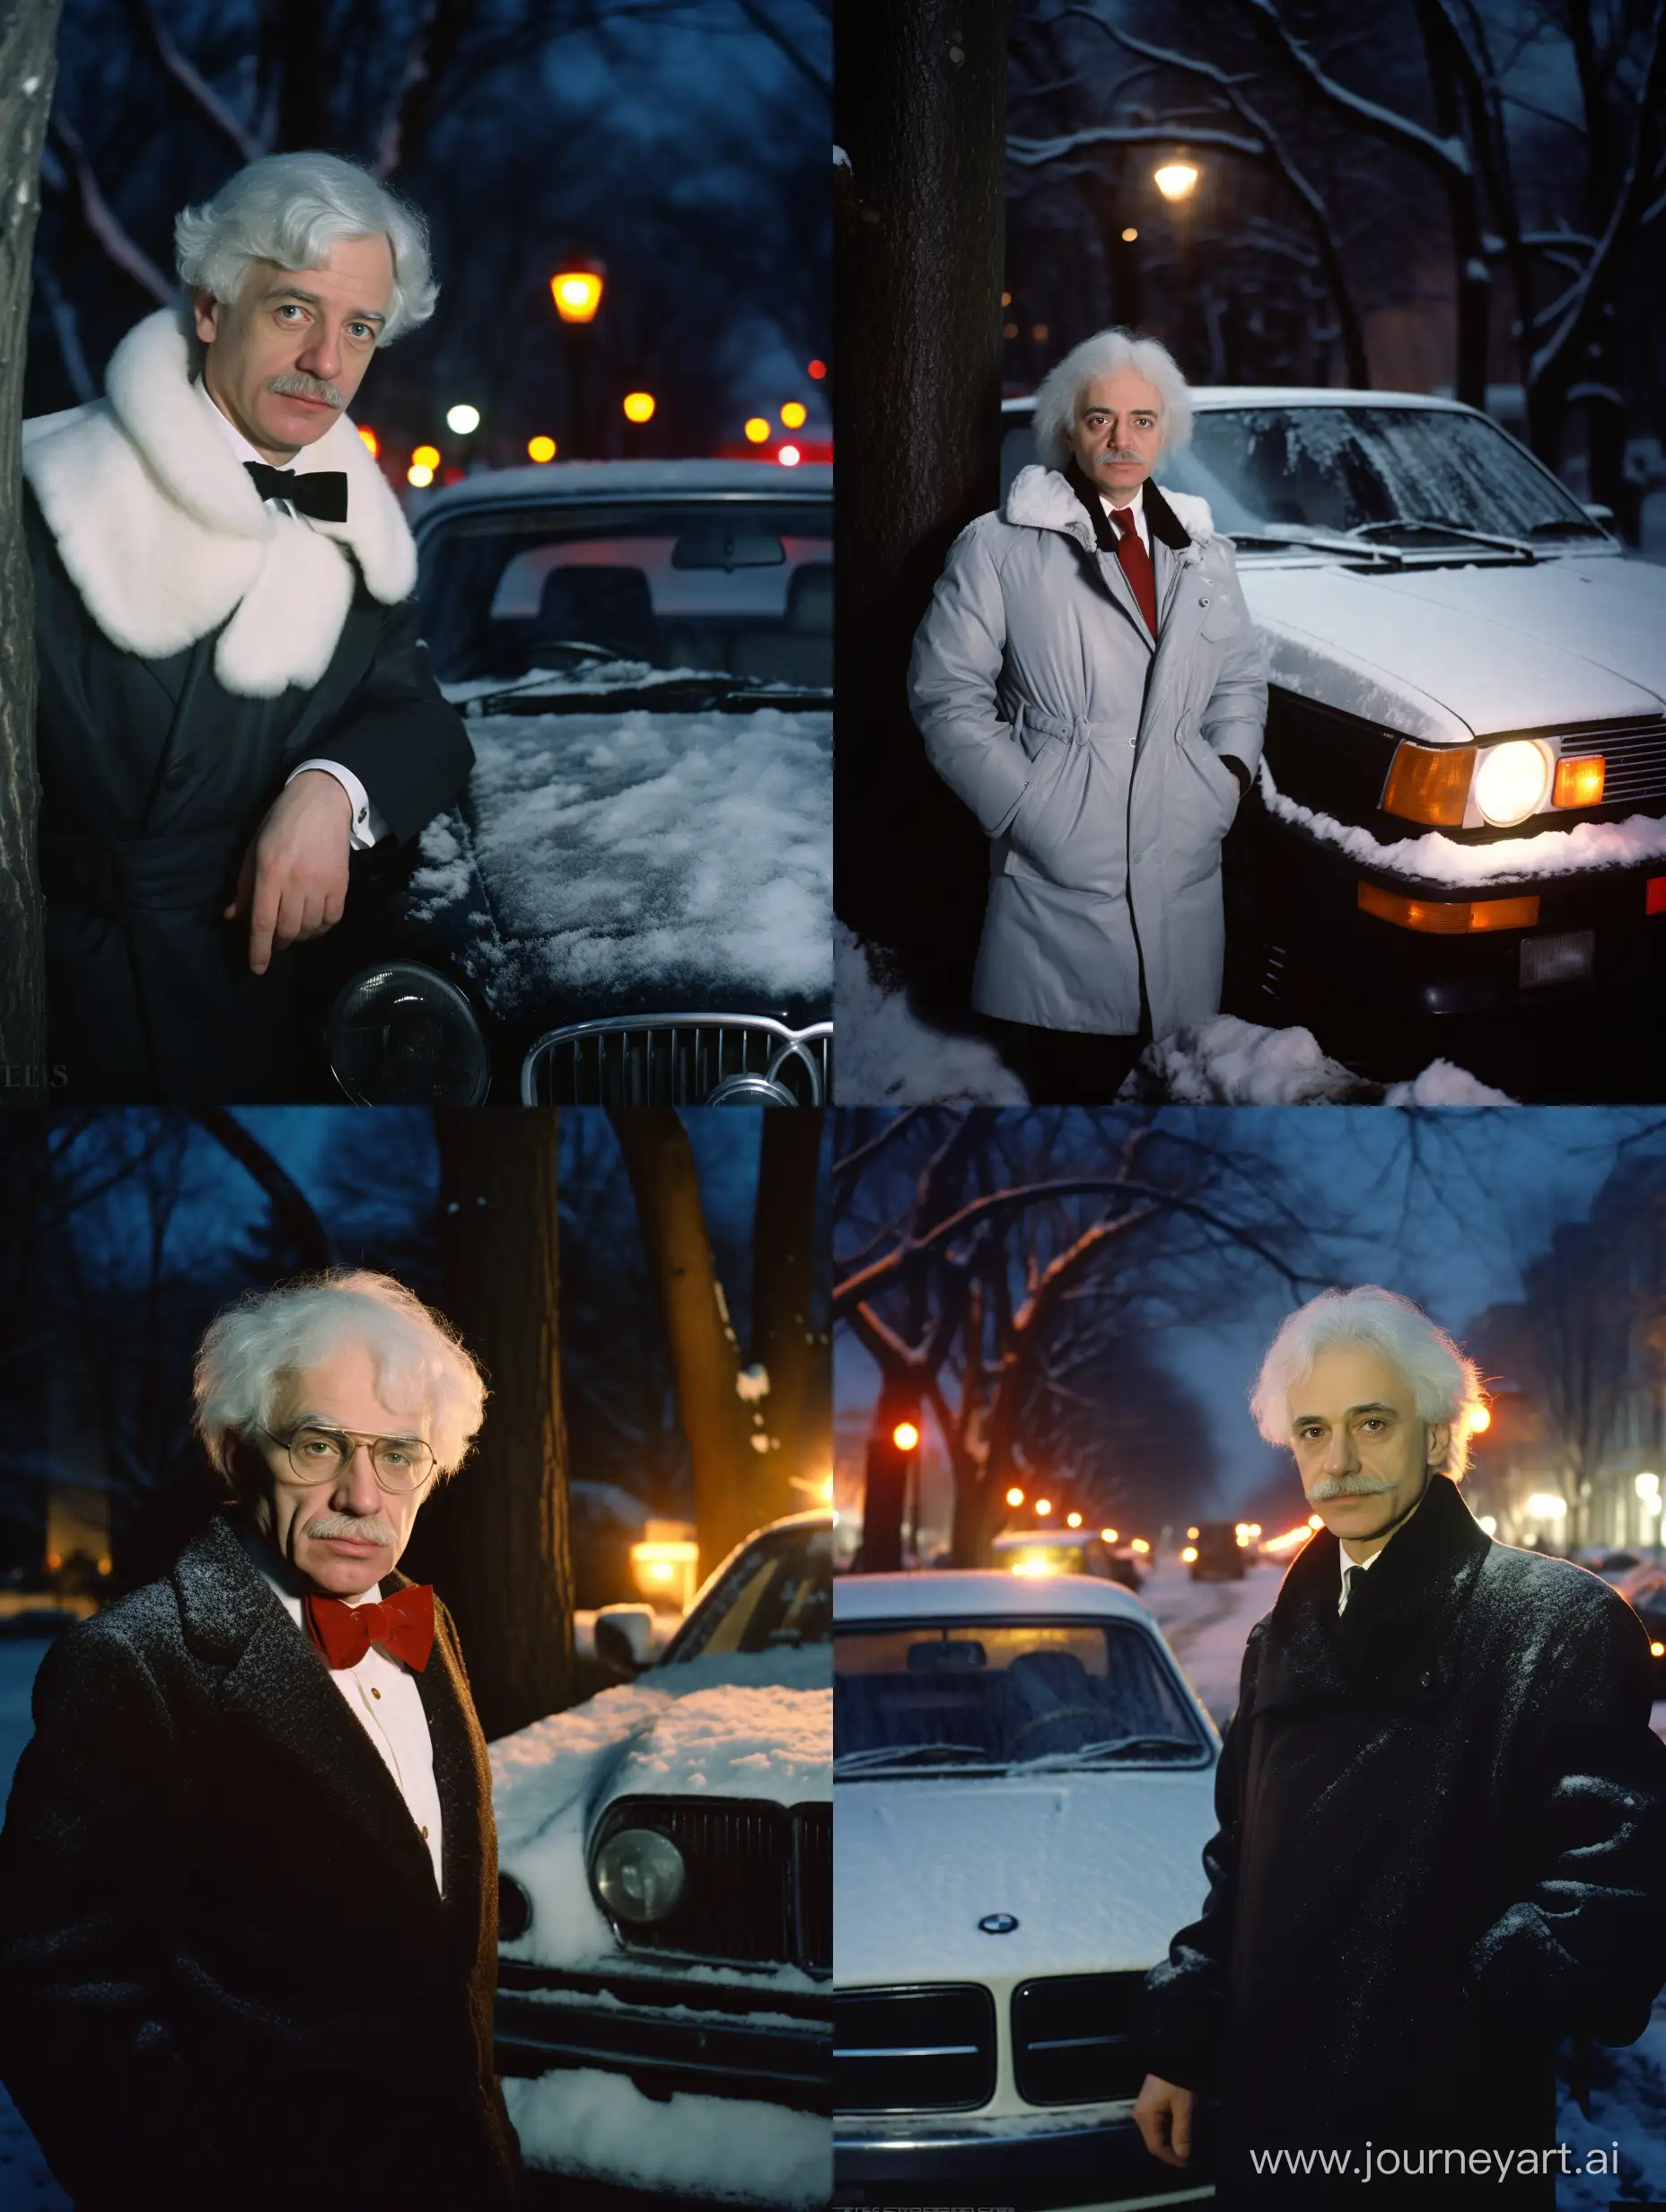 Elderly-ALFRED-EINSTEIN-in-Stylish-Winter-Scene-with-BMW